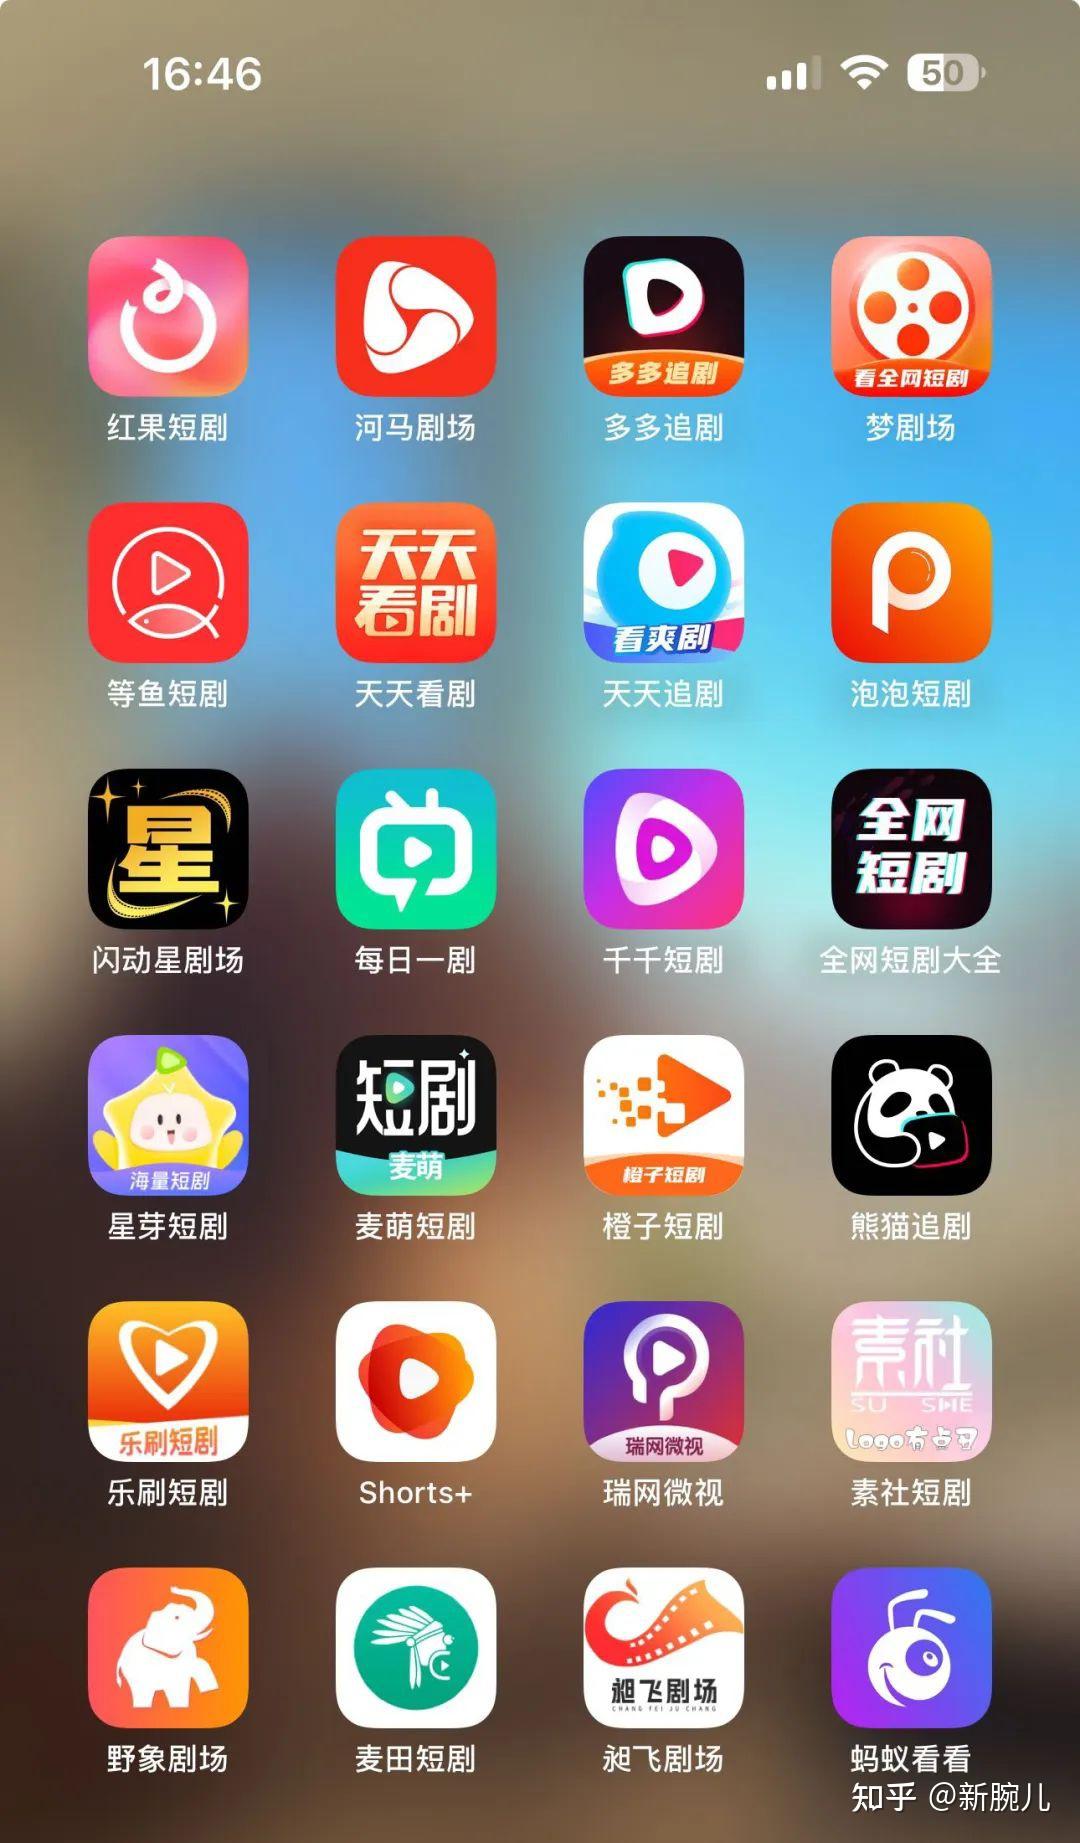 红果短剧-热门精彩短剧 - 应用程序 - iTunes中国